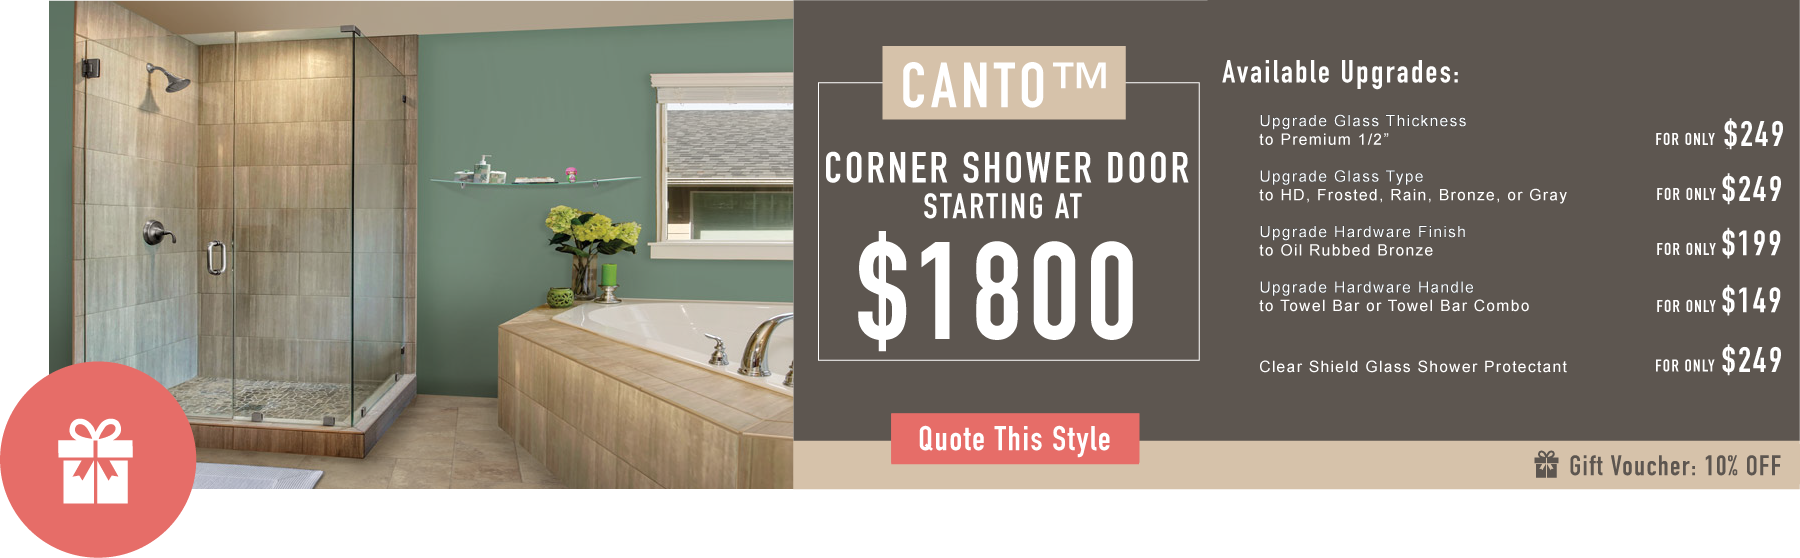 Corner Shower Doors Promos